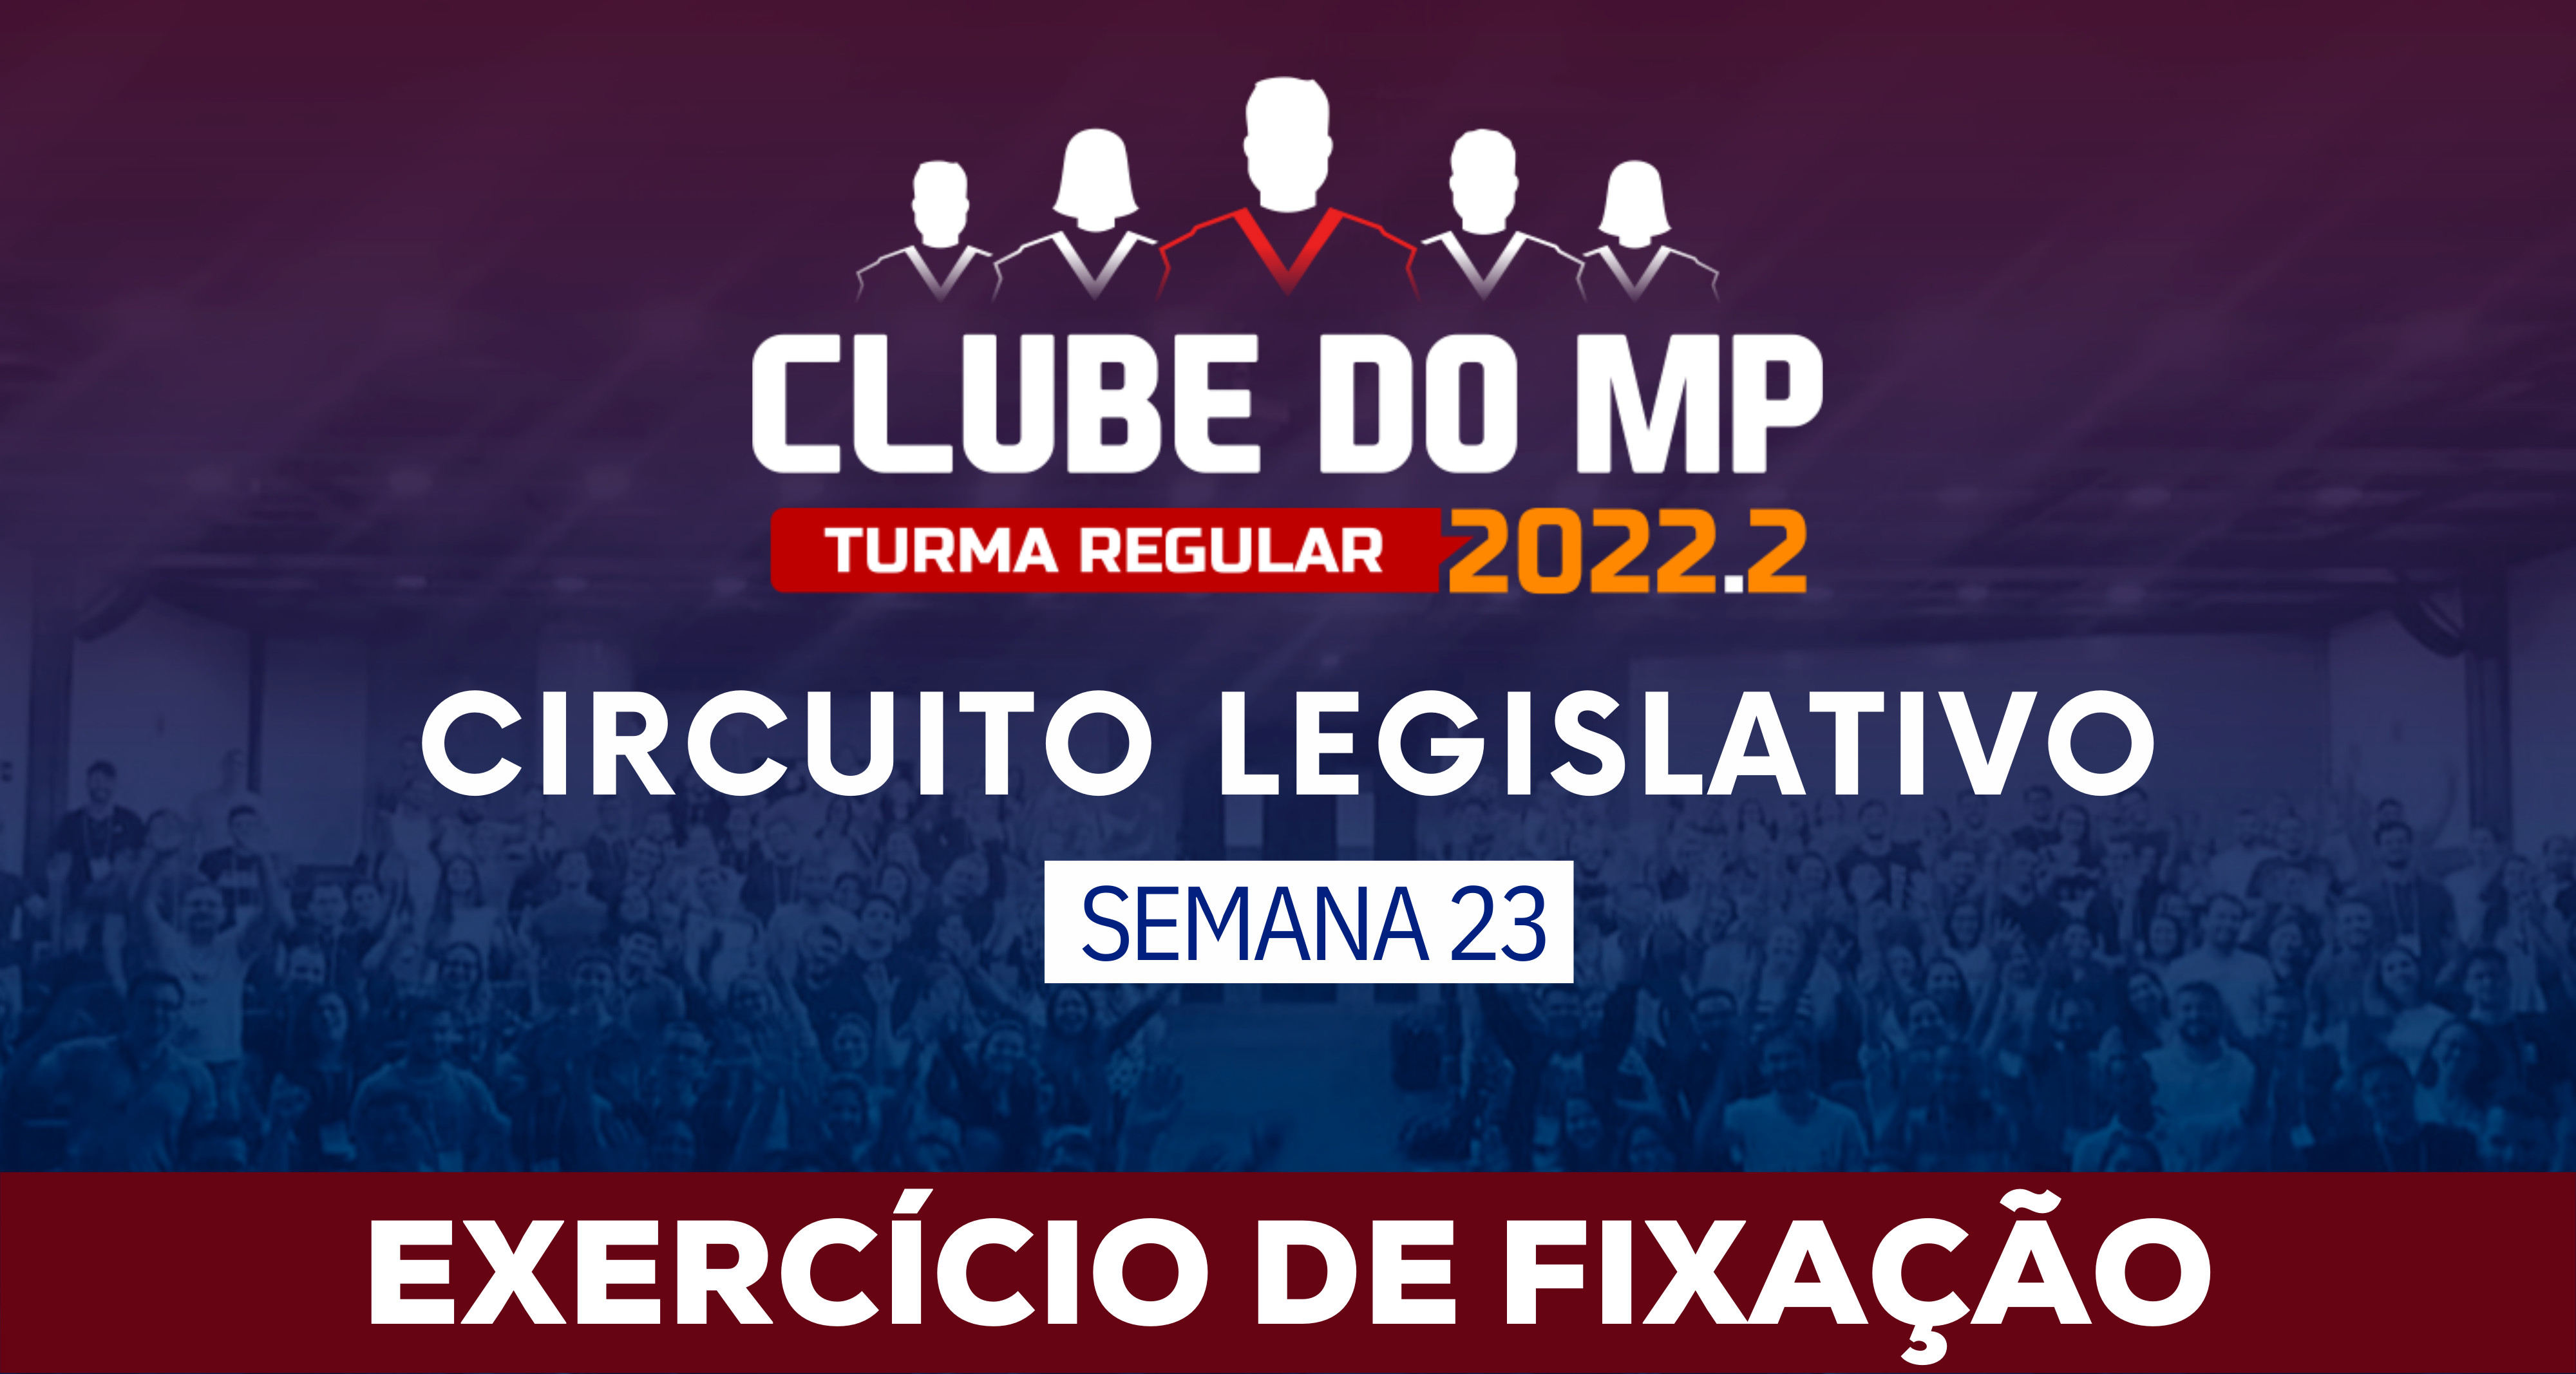 Circuito Legislativo 2022.2 (Clube do MP - Semana 23)